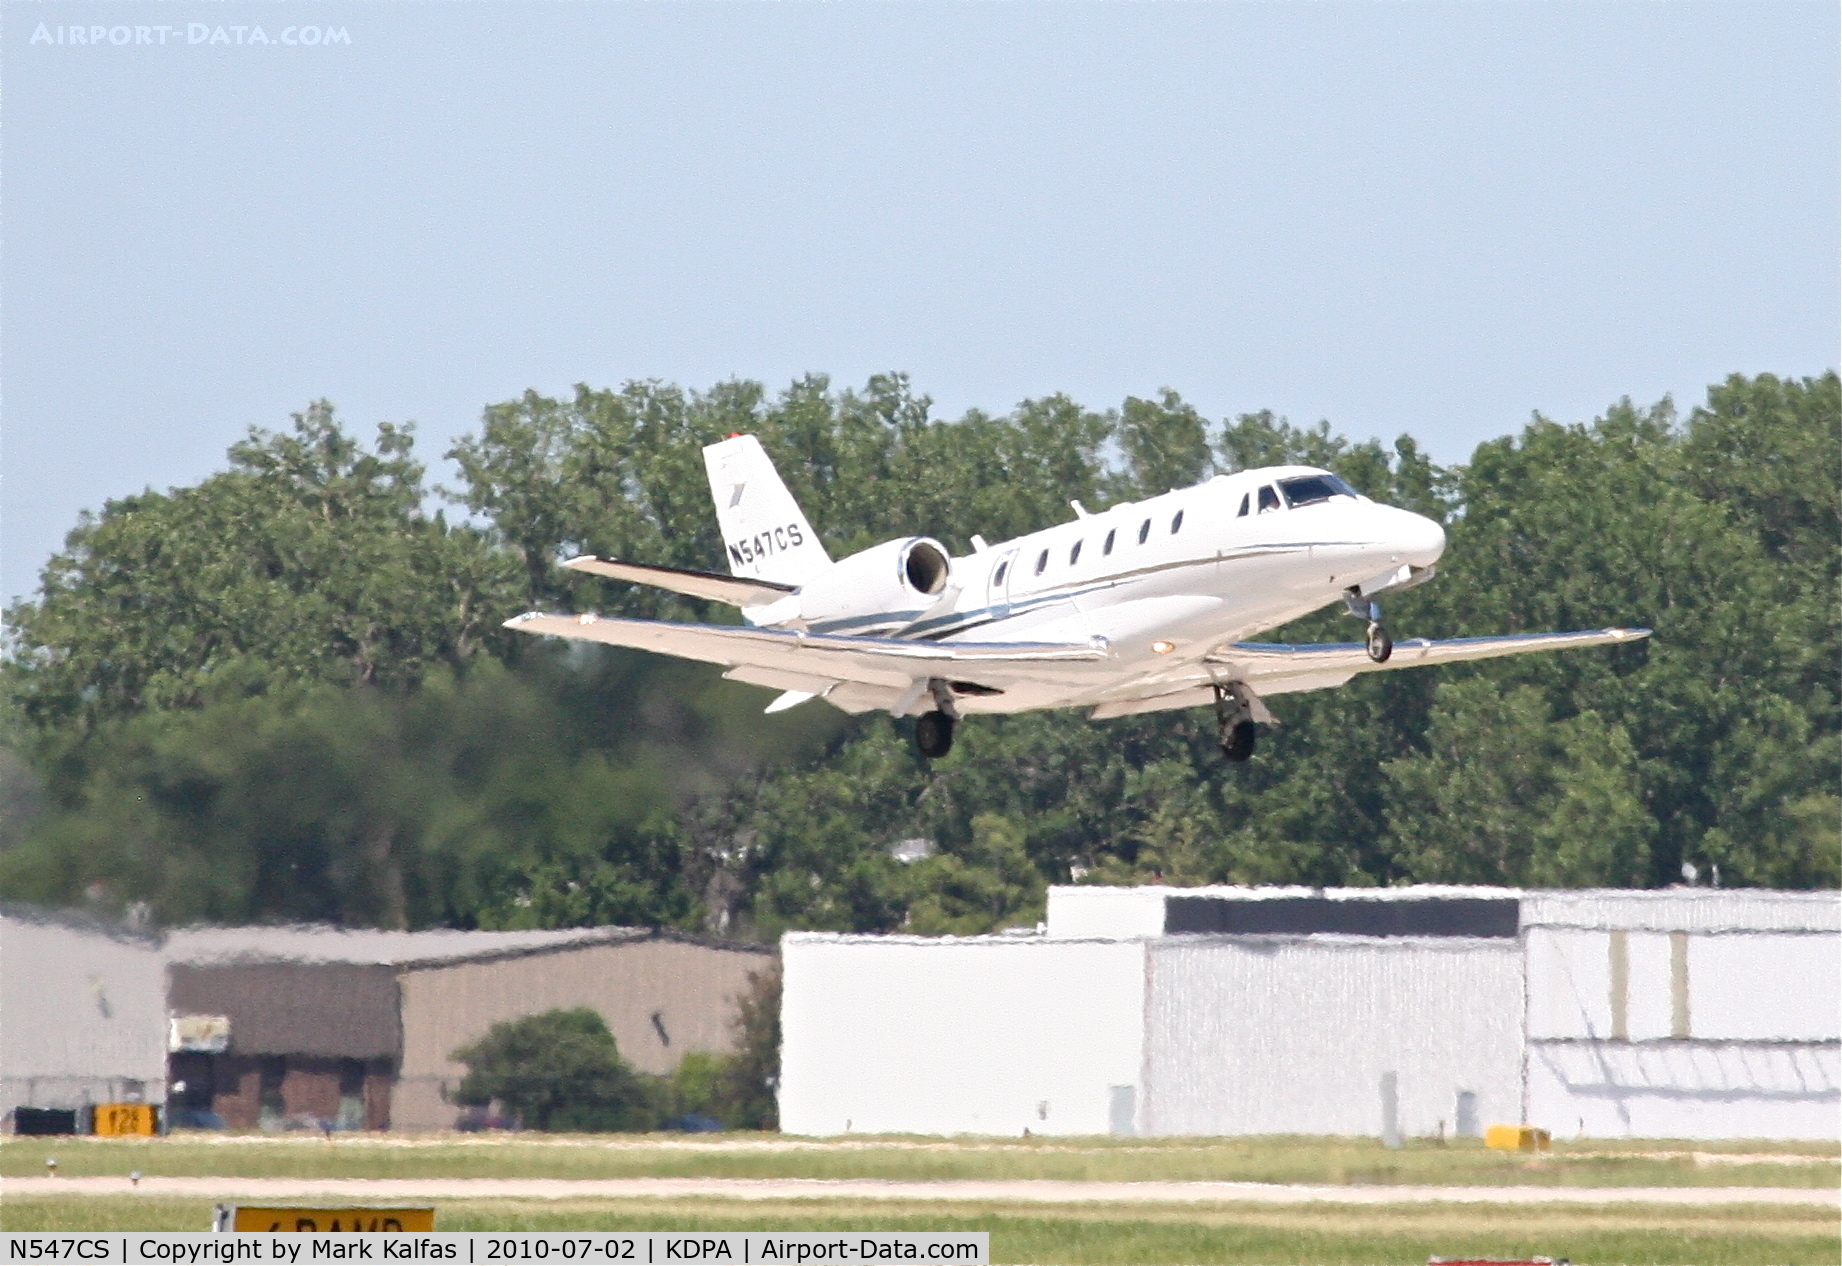 N547CS, 2005 Cessna 560XL Citation XLS C/N 560-5542, CITATIONSHARES SALES INC Cessna 560XL Excel, N547CS departing 20R KDPA en-route to KINT.